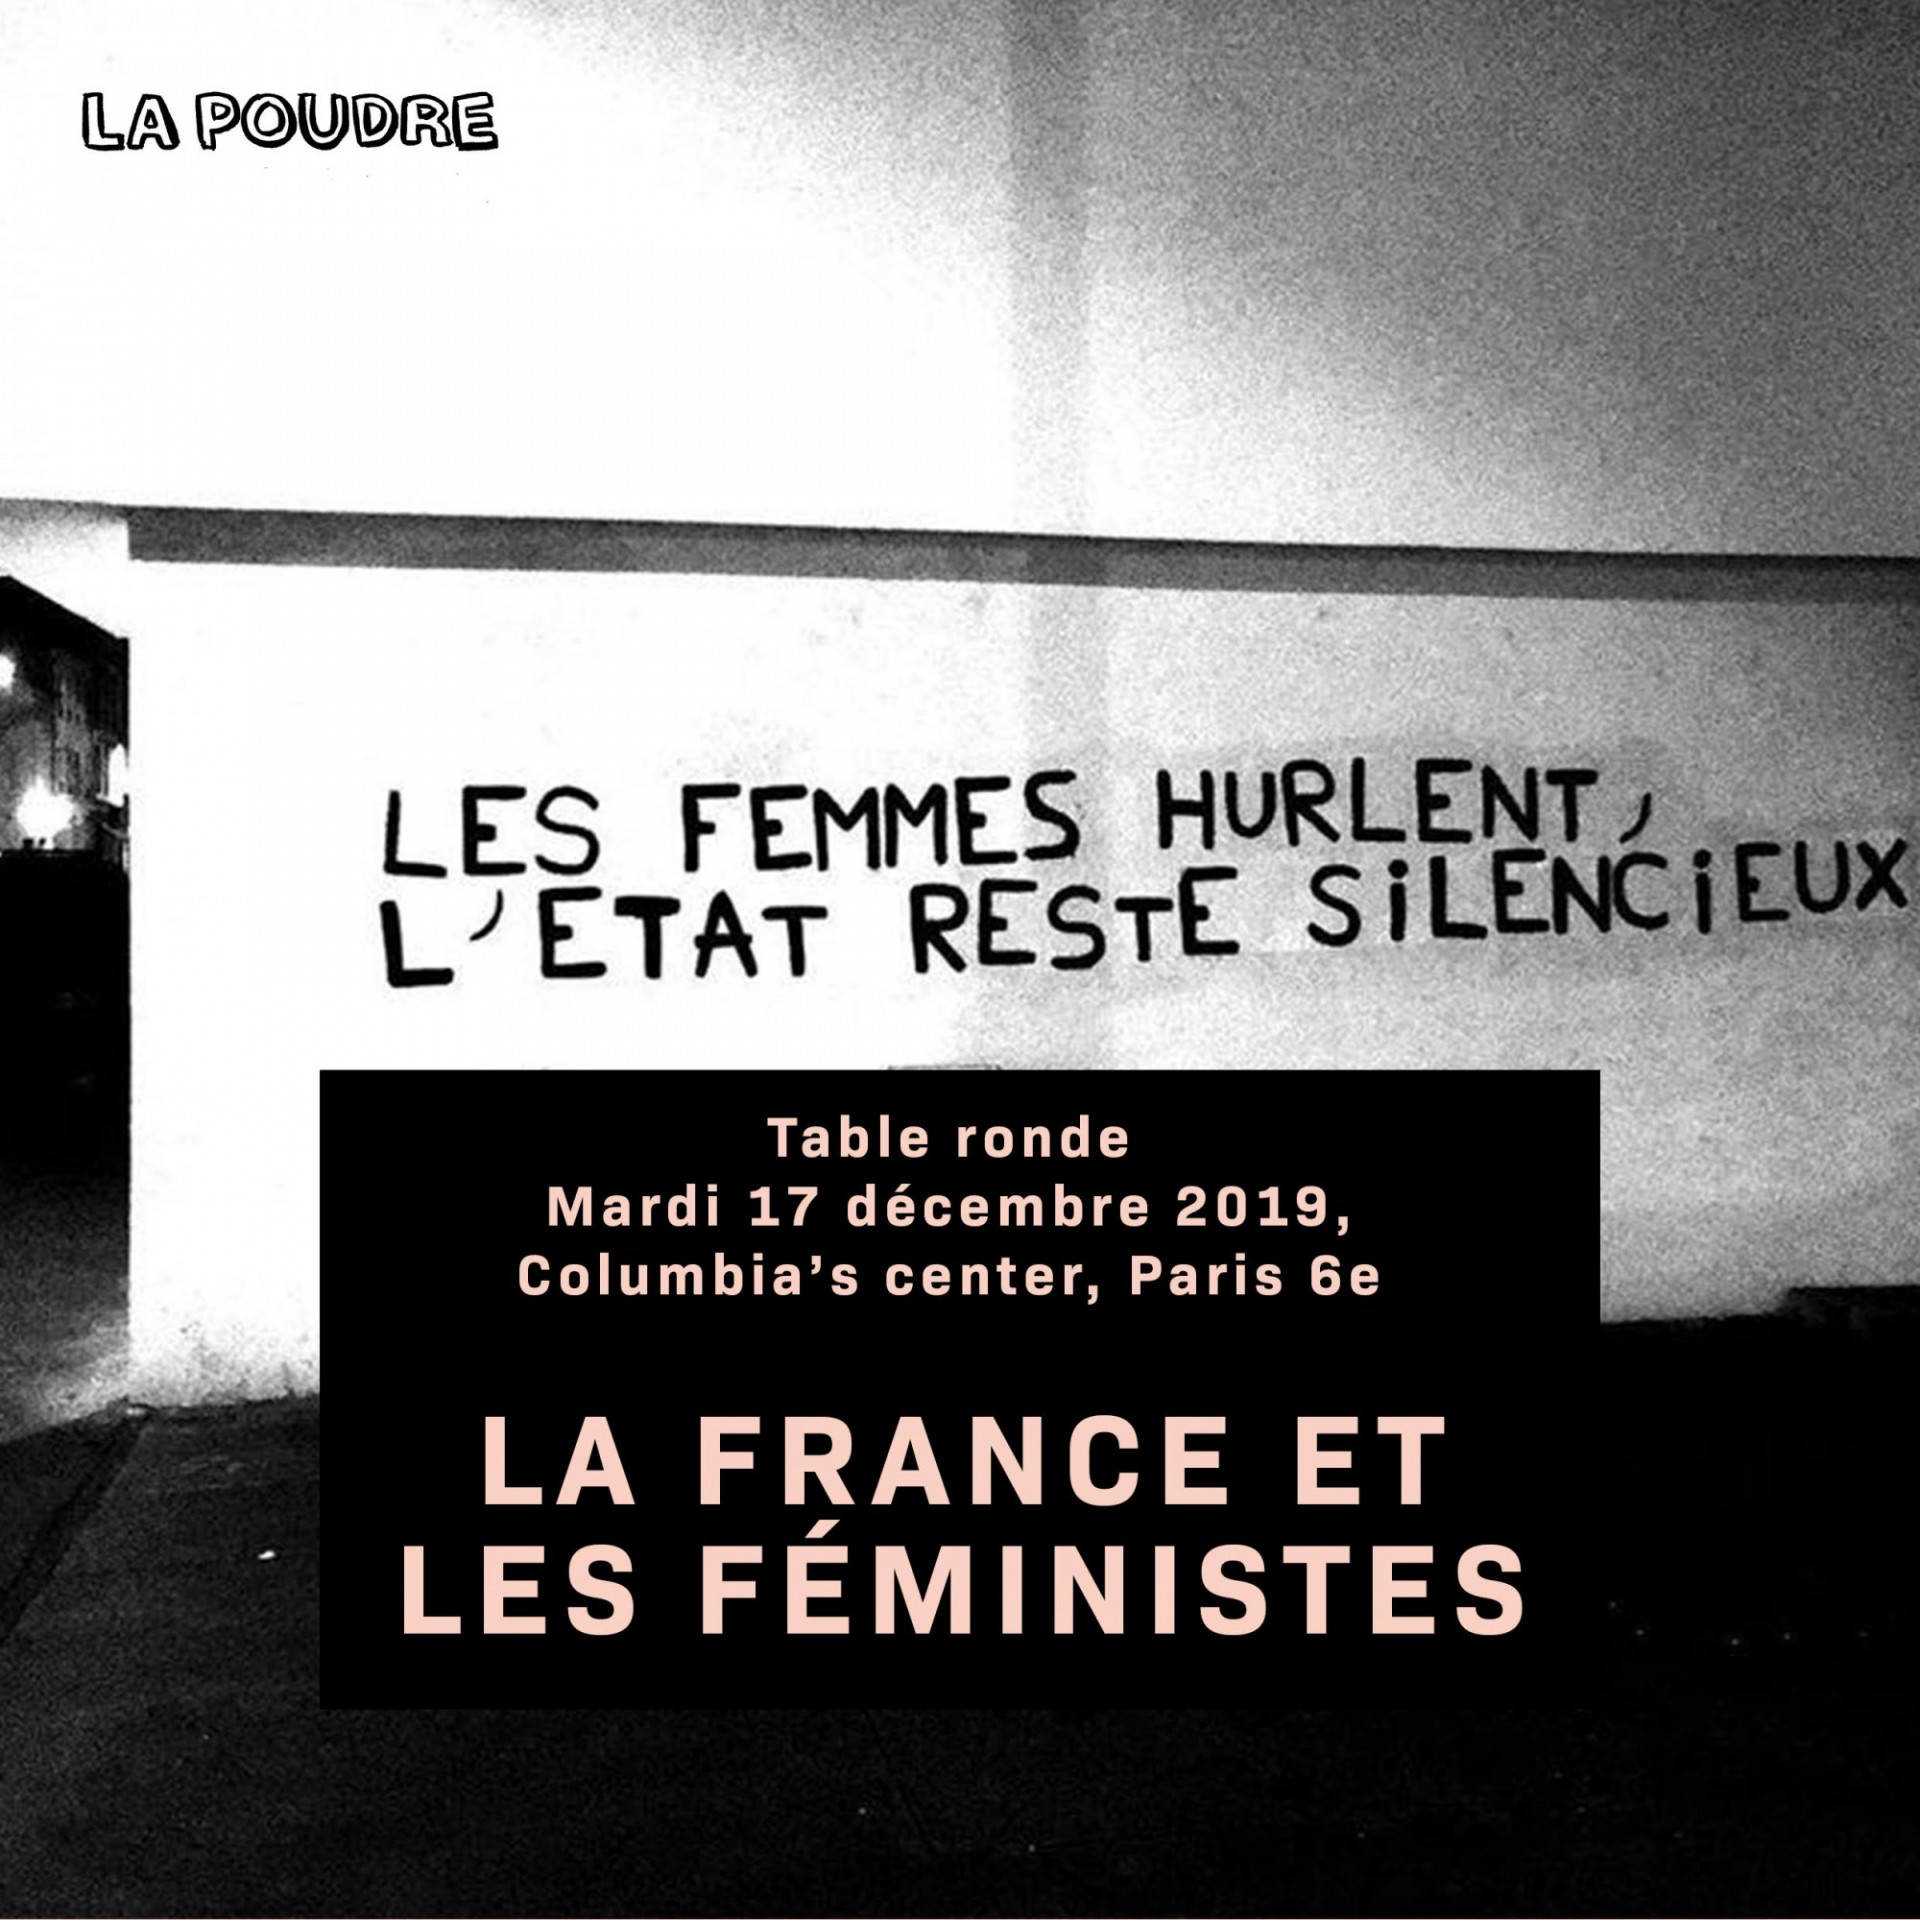 La France et les Feministes